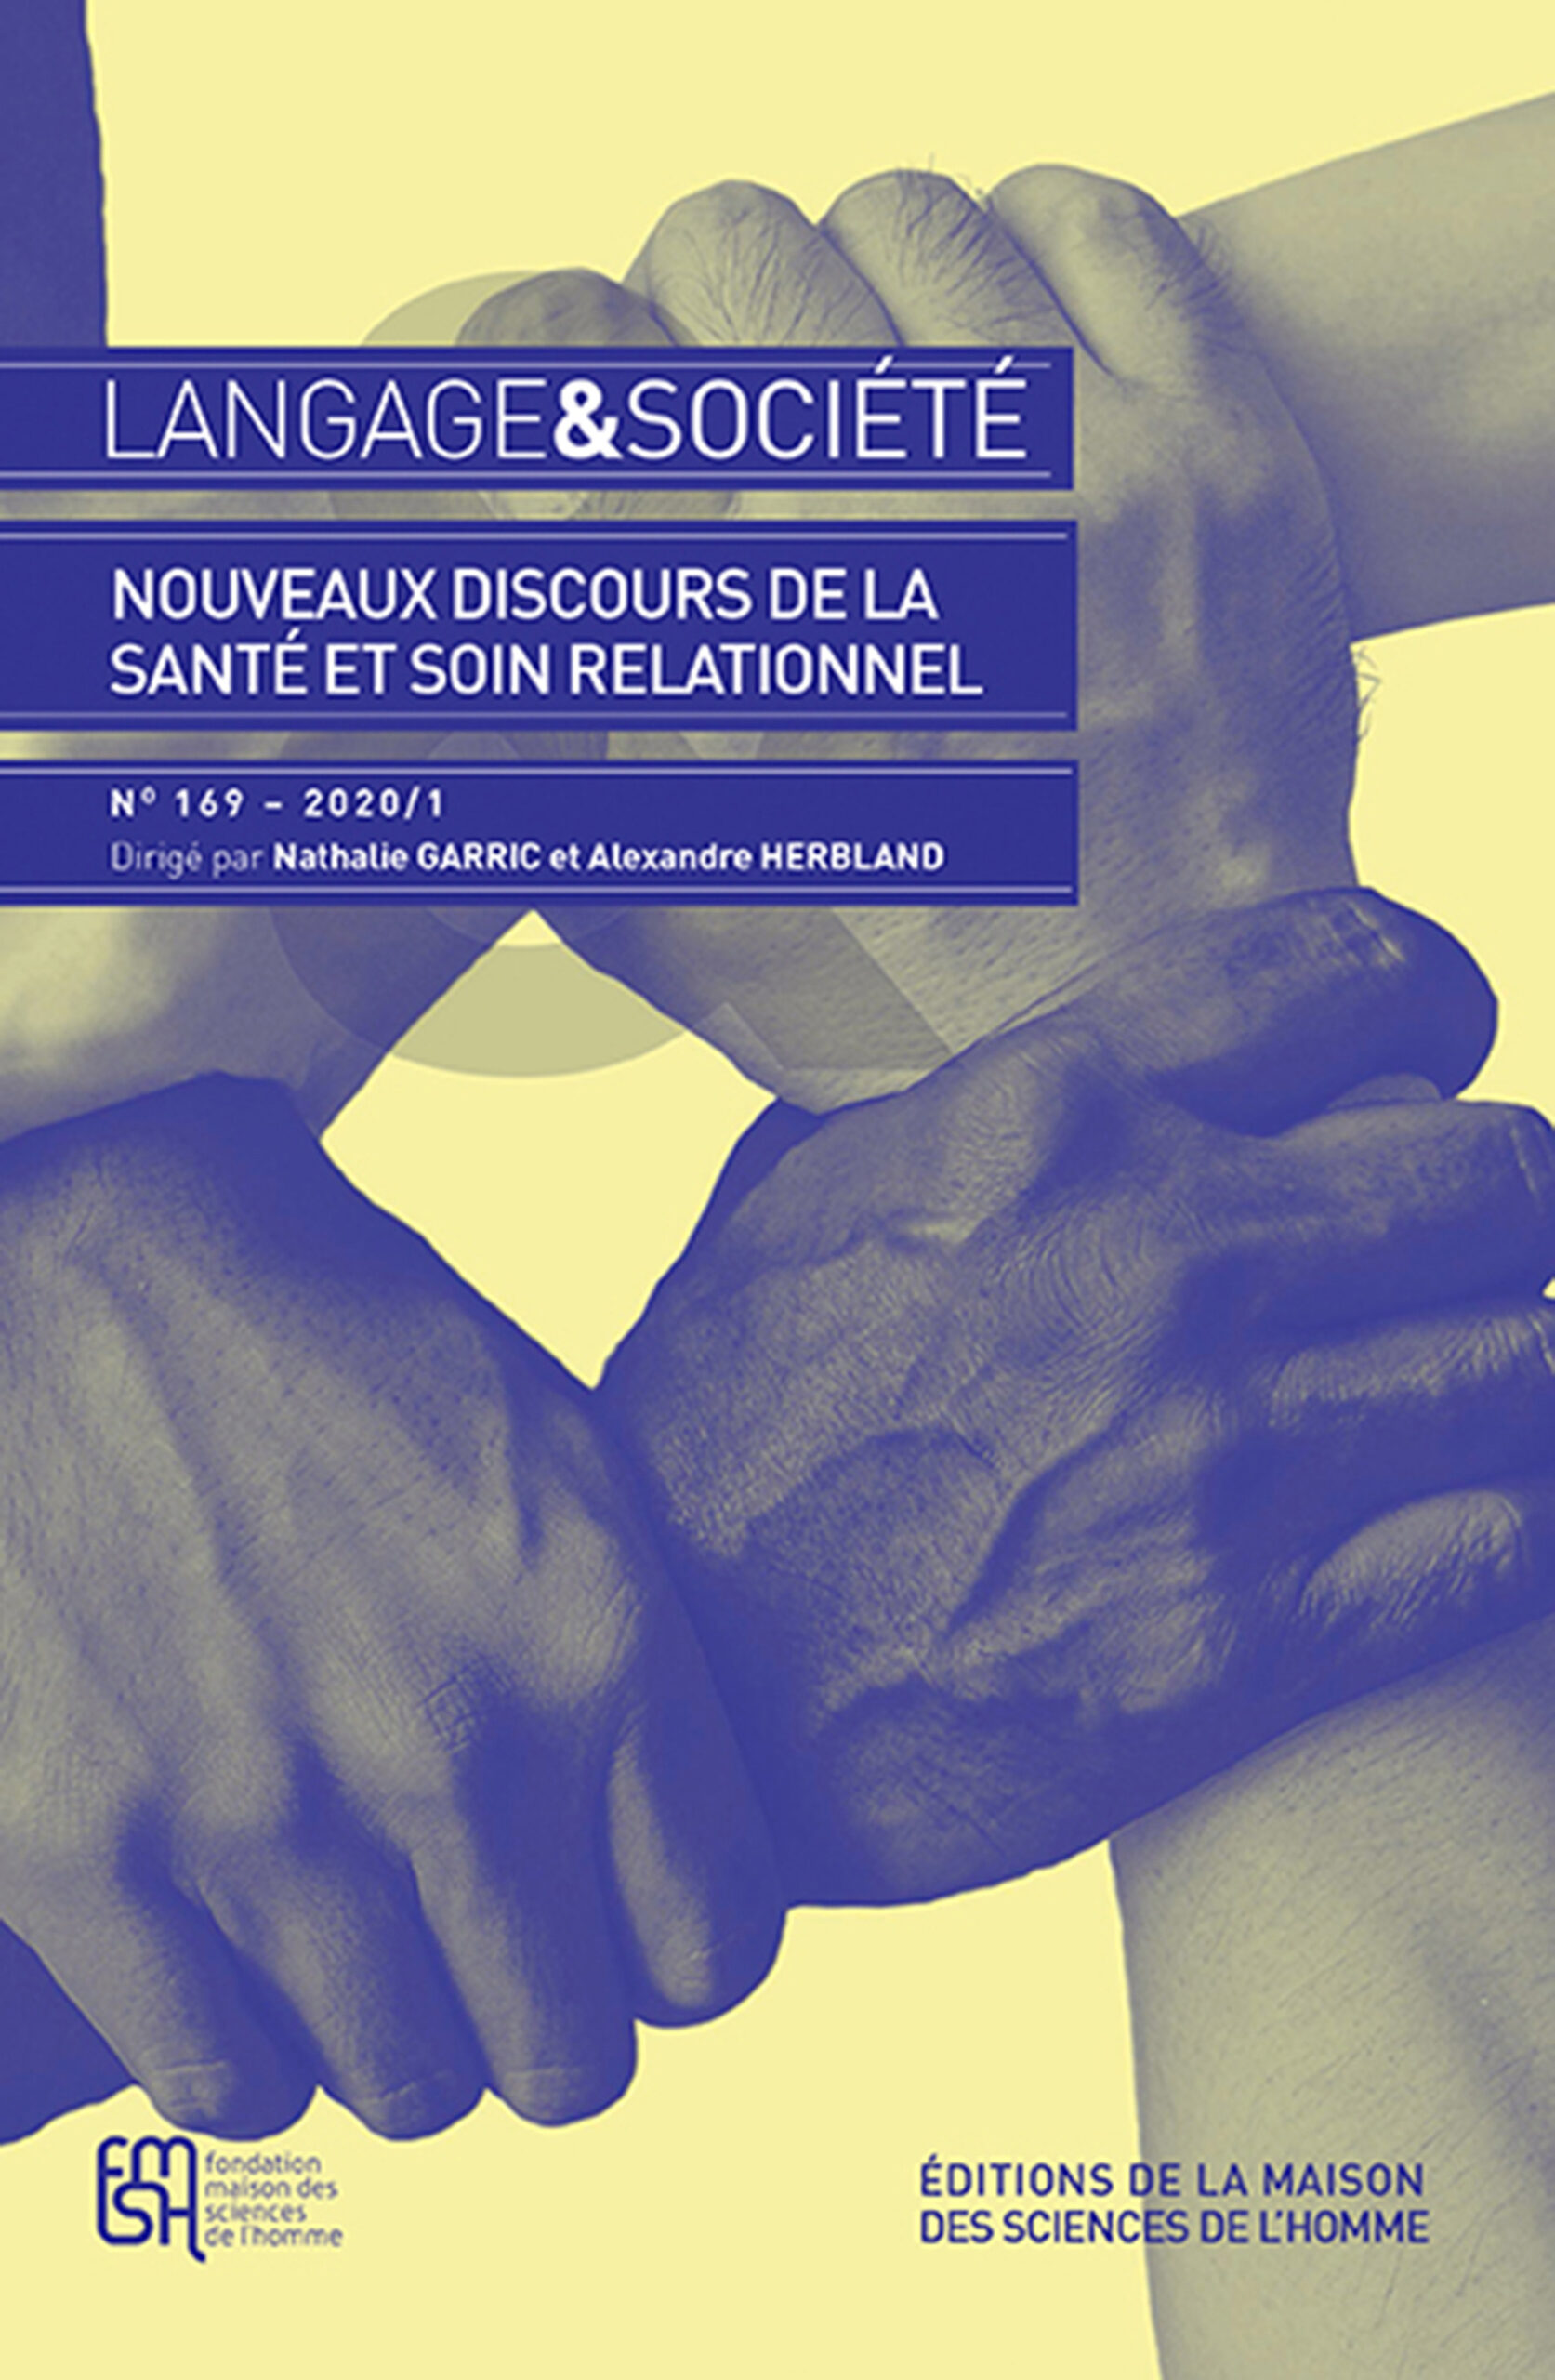 Langage et société n°169/2019